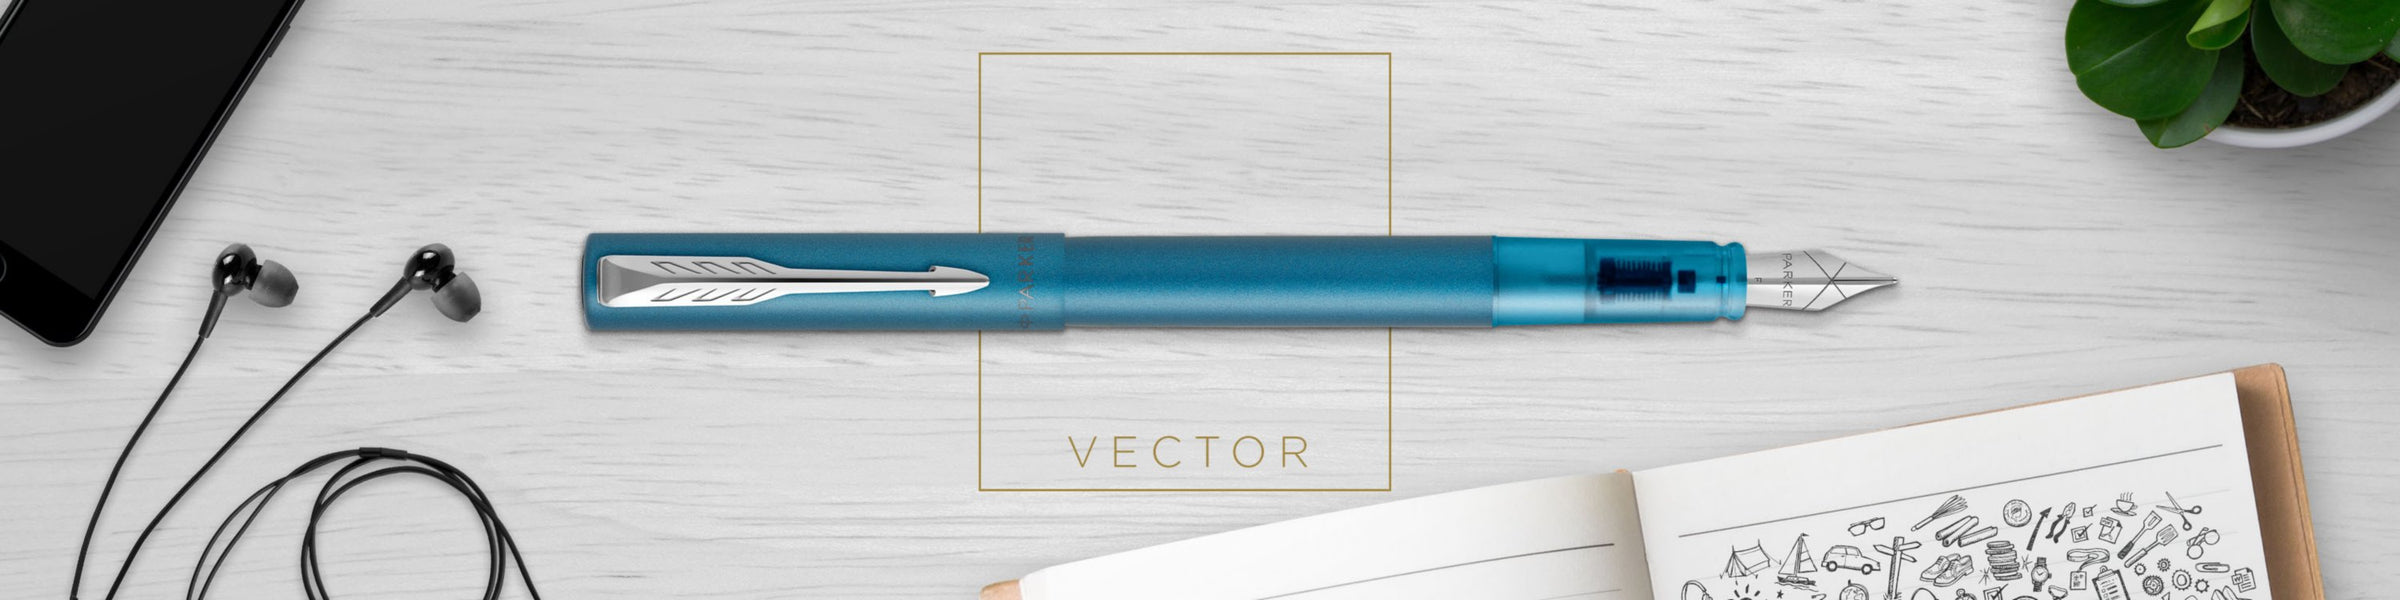 Parker Vector XL Fountain Pen